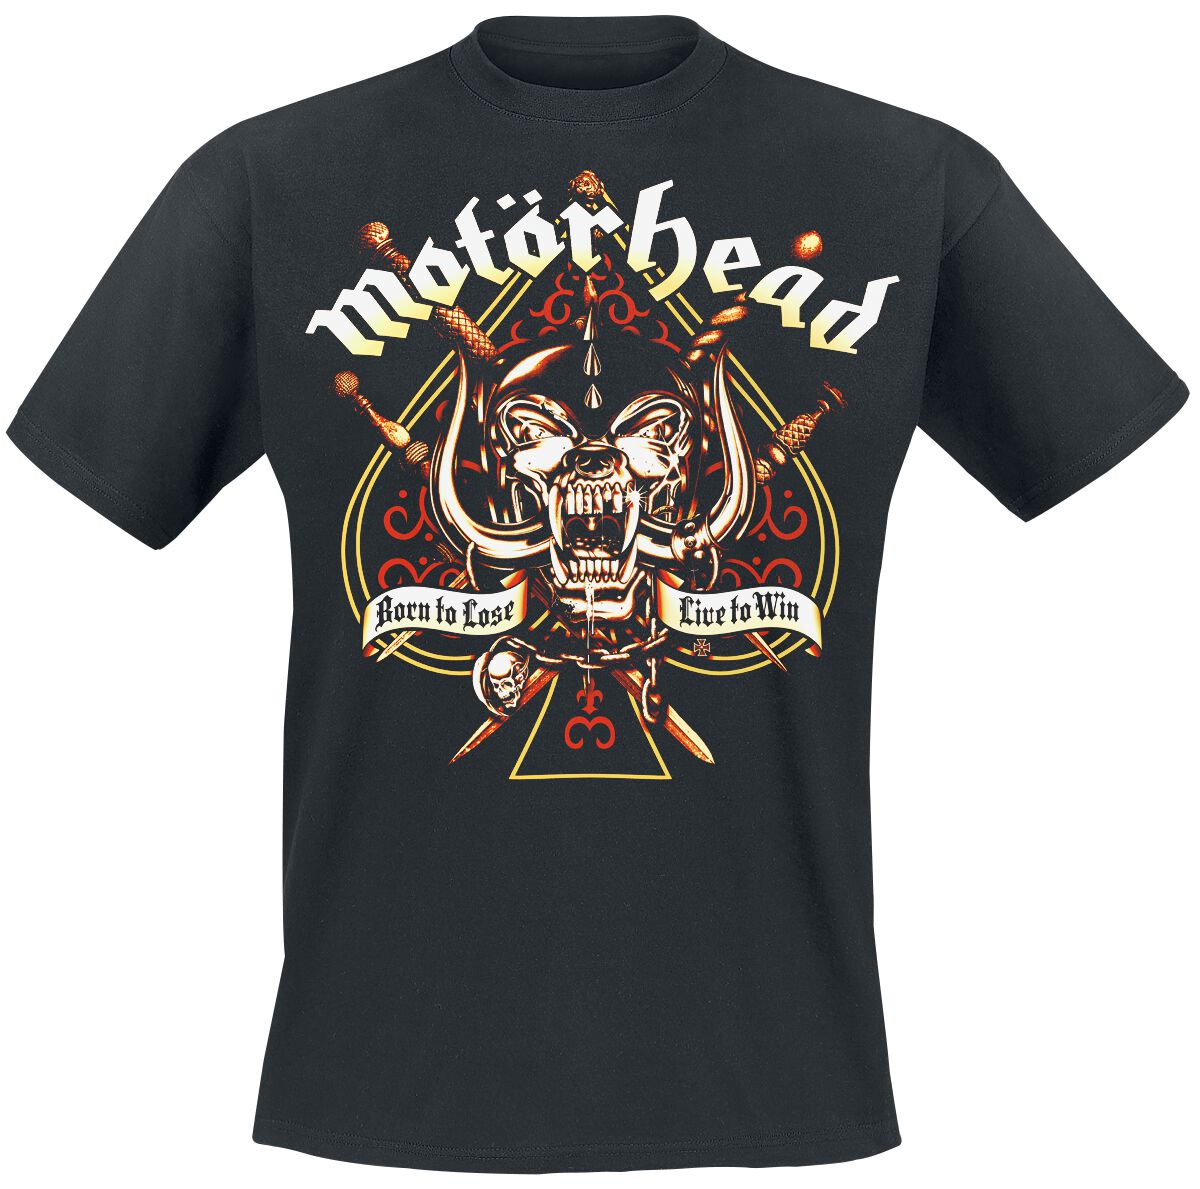 Motörhead T-Shirt - Sword Spade - L bis 4XL - für Männer - Größe 4XL - schwarz  - Lizenziertes Merchandise!